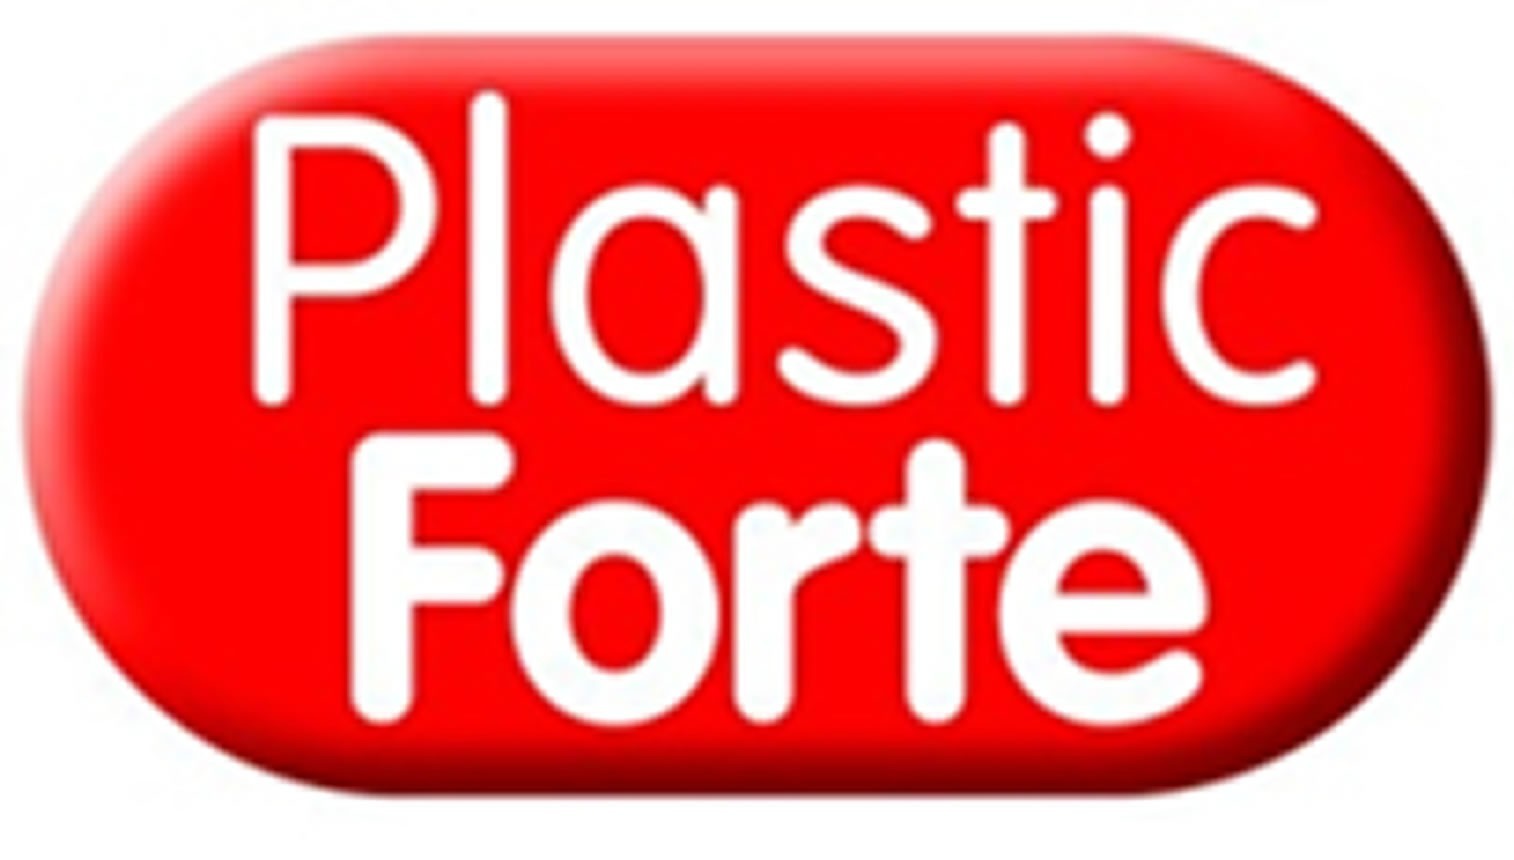 Plastic forte